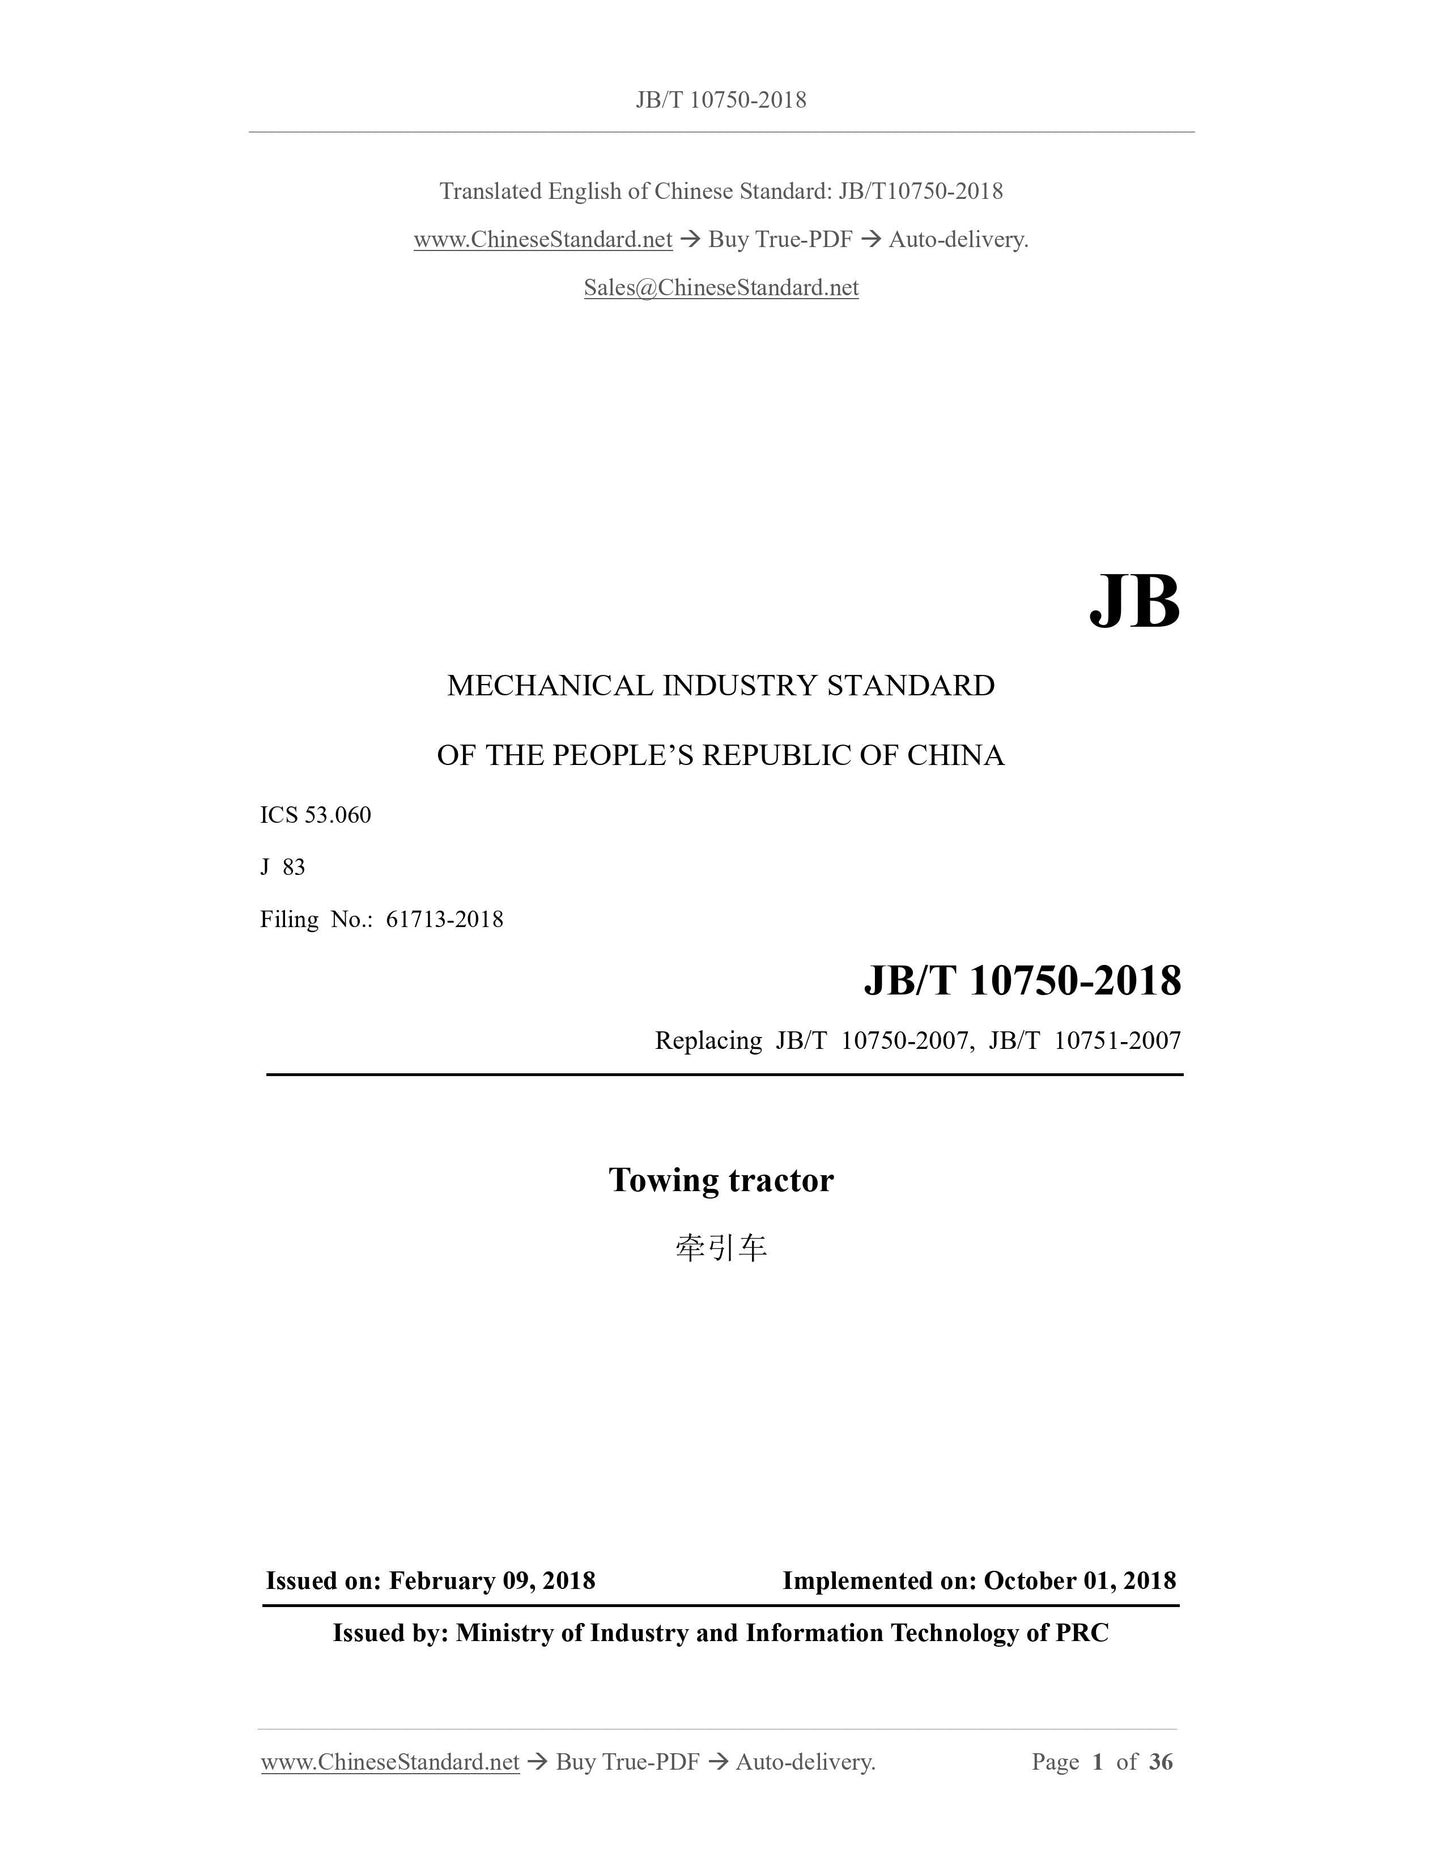 JB/T 10750-2018 Page 1